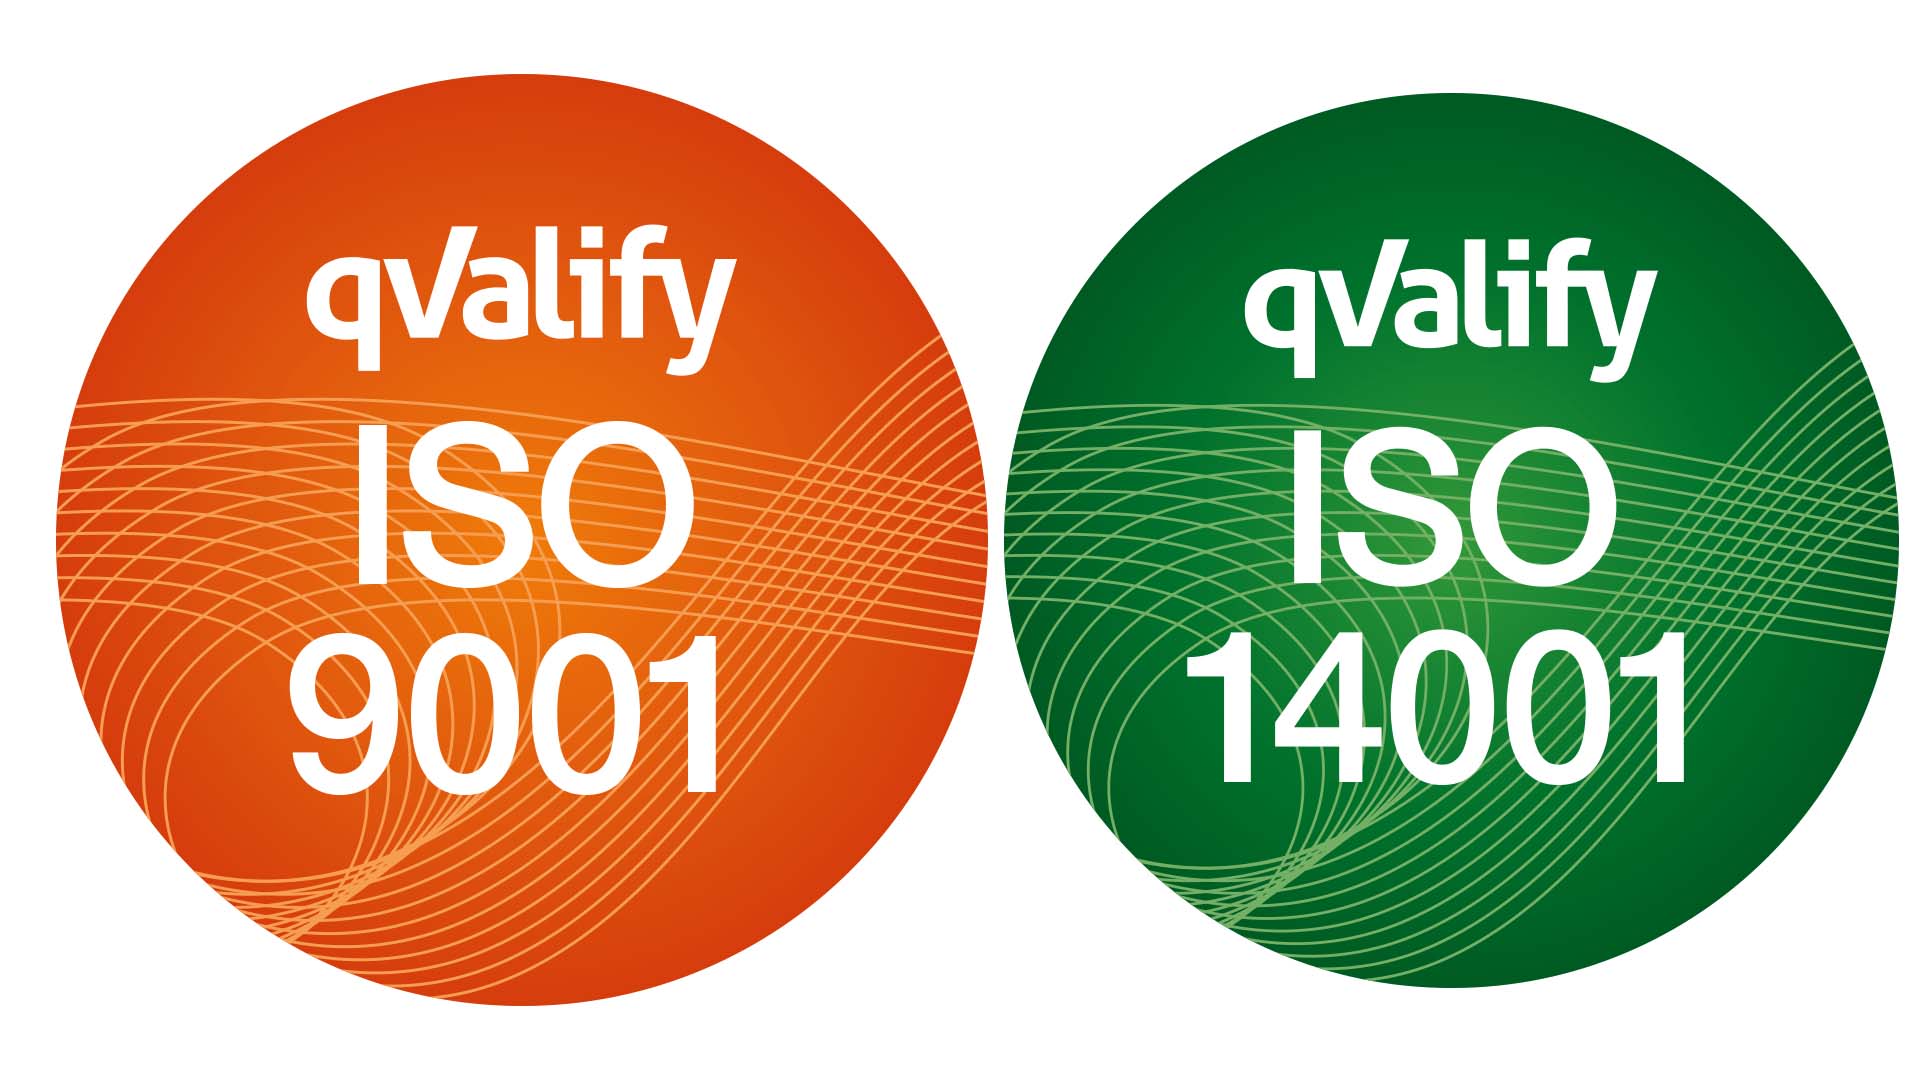 två symboler för ISO-certifikat för kvalitet och miljö